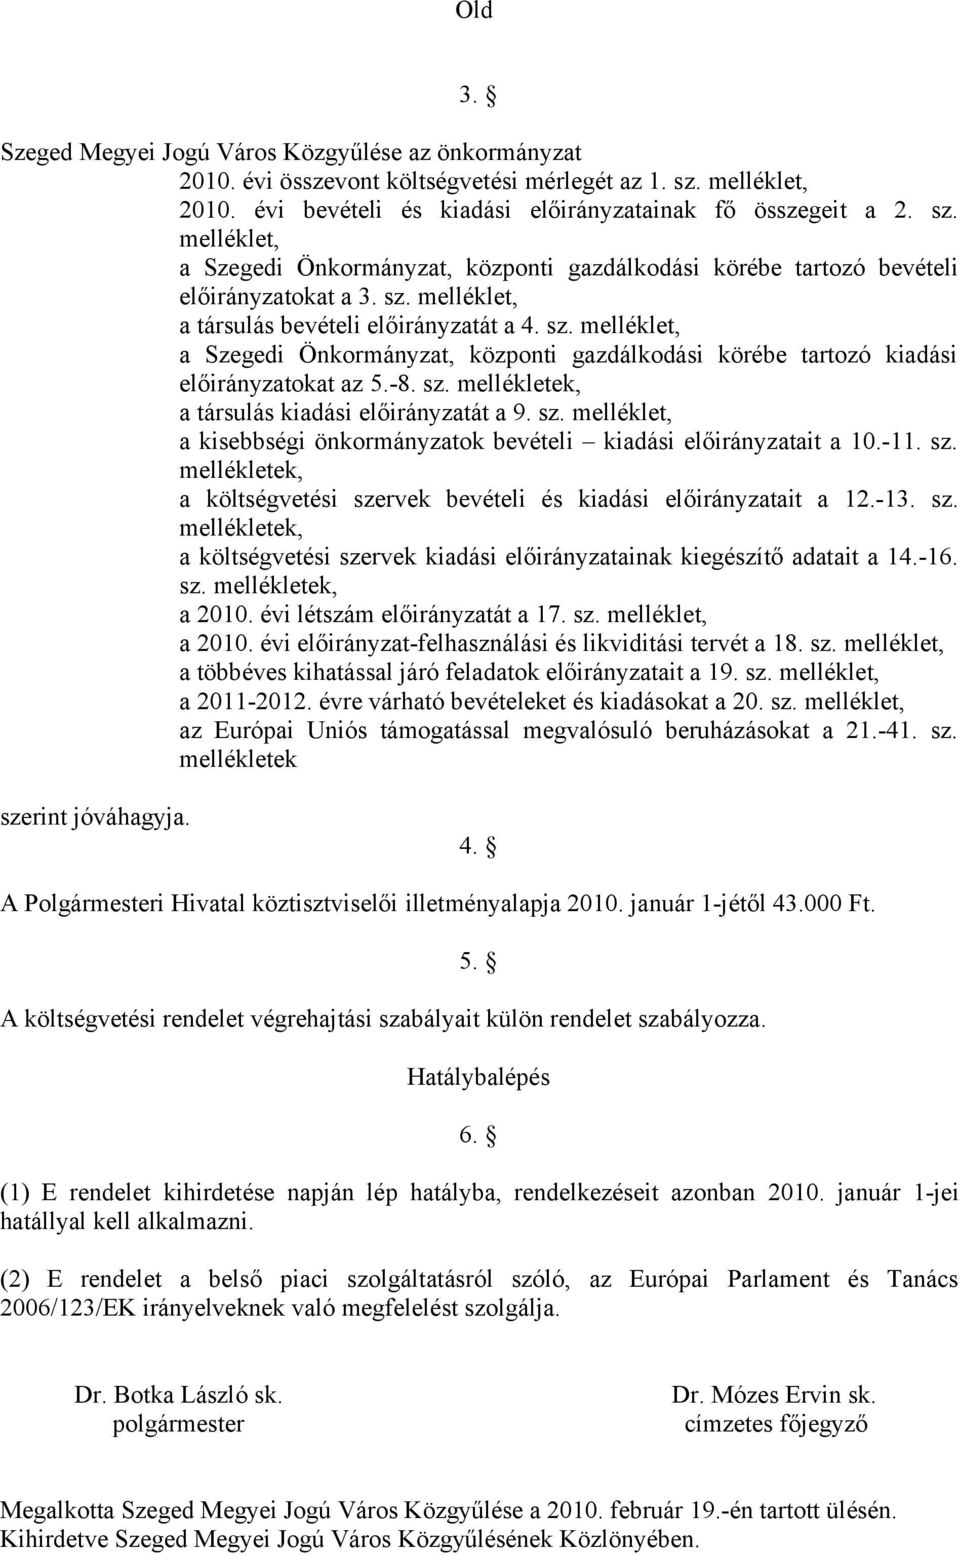 sz. melléklet, a Szegedi Önkormányzat, központi gazdálkodási körébe tartozó kiadási okat az 5.-8. sz. mellékletek, a társulás kiadási át a 9. sz. melléklet, a kisebbségi önkormányzatok bevételi kiadási ait a 10.